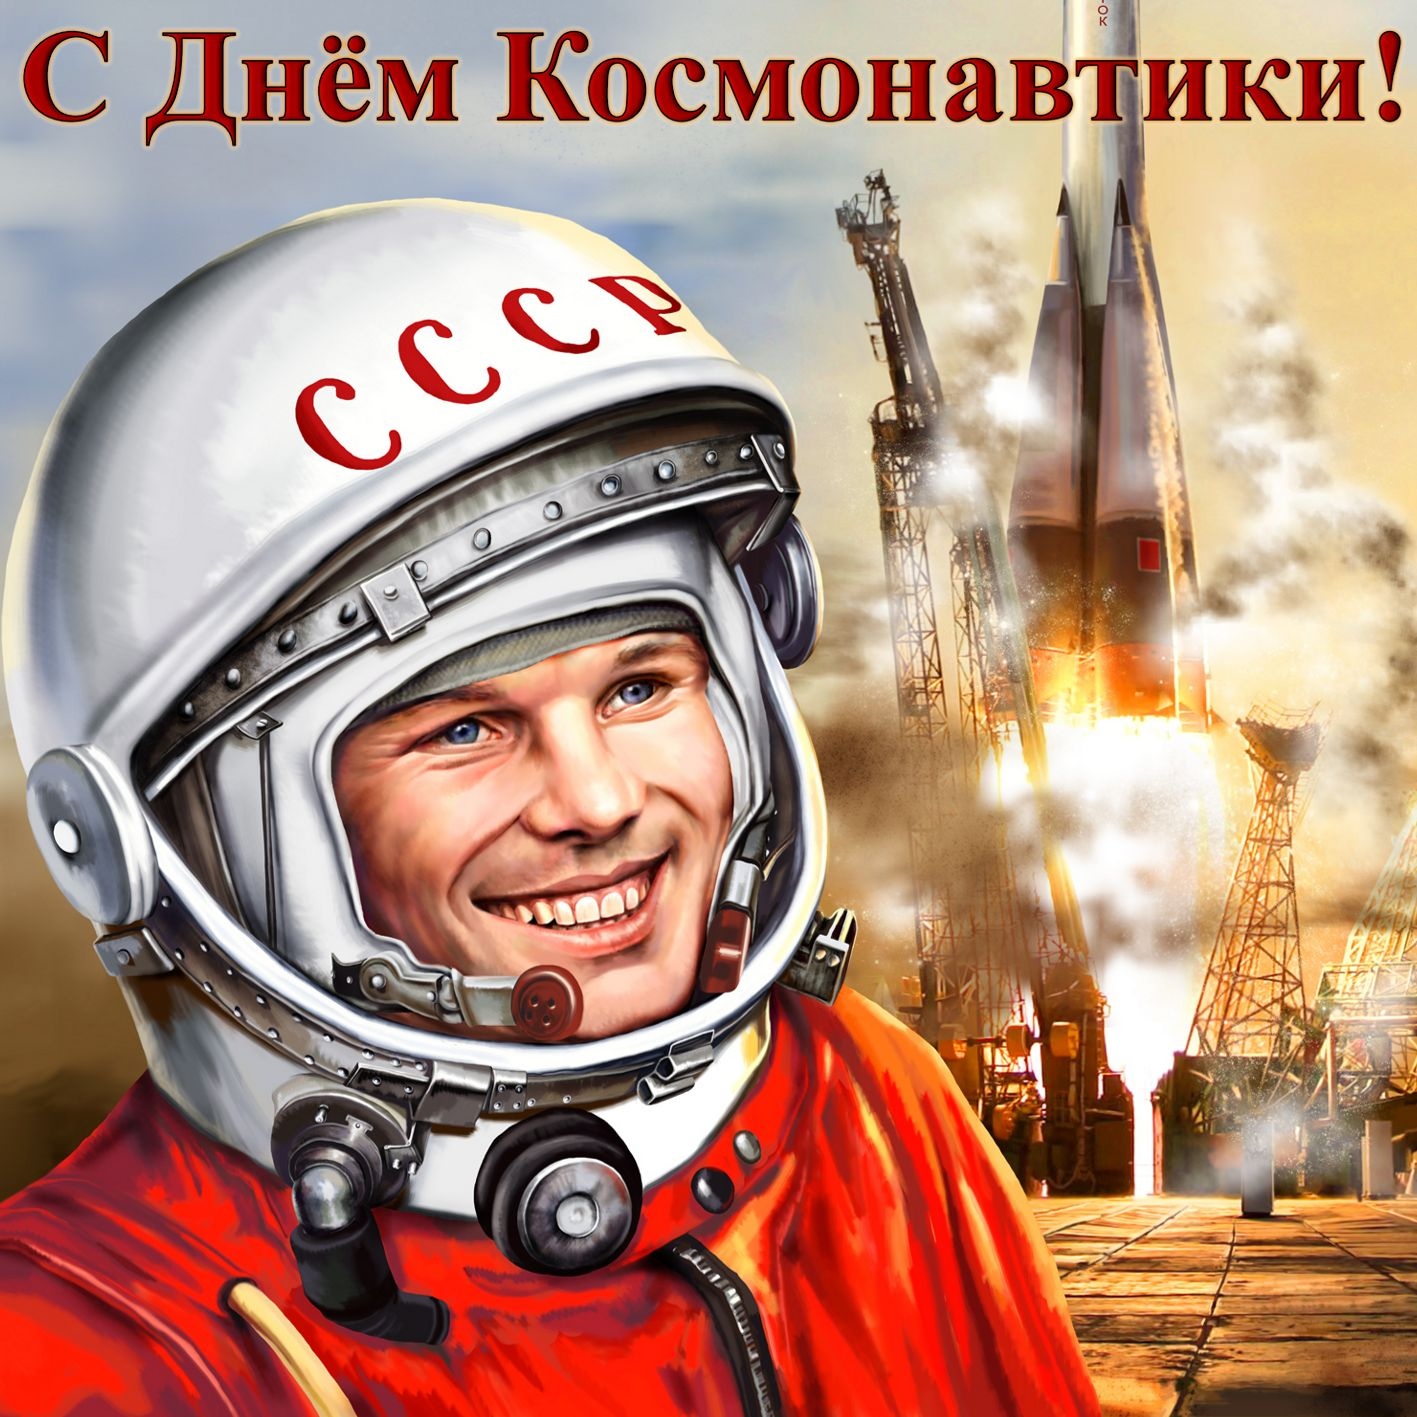 Борис Пайкин поздравил брянцев с Днём космонавтики